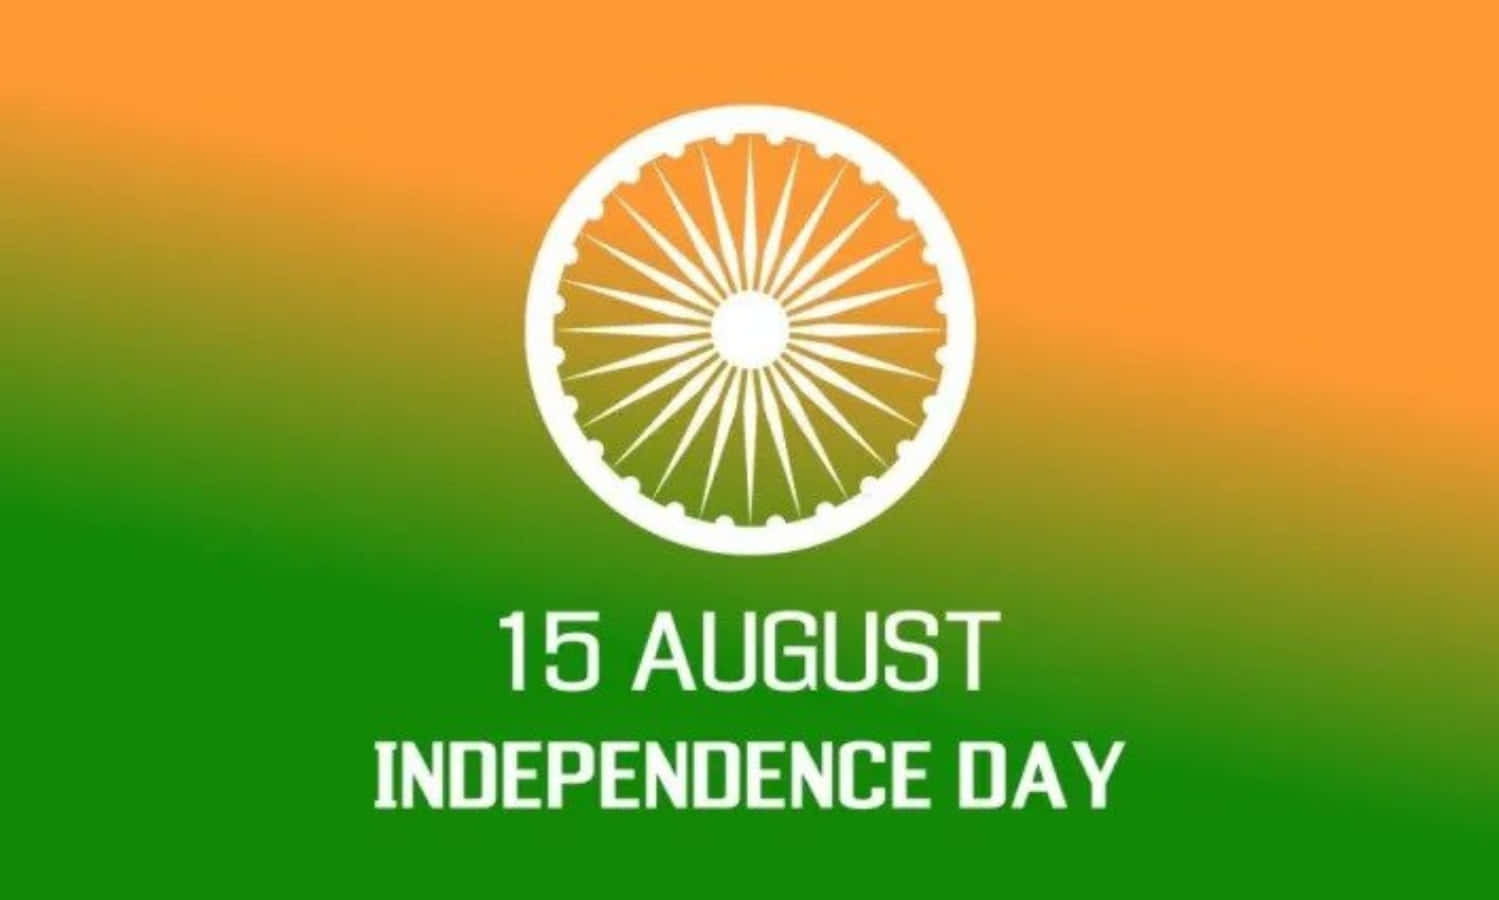 Imagende La Bandera Verde Y Naranja Del Día De La Independencia De India.